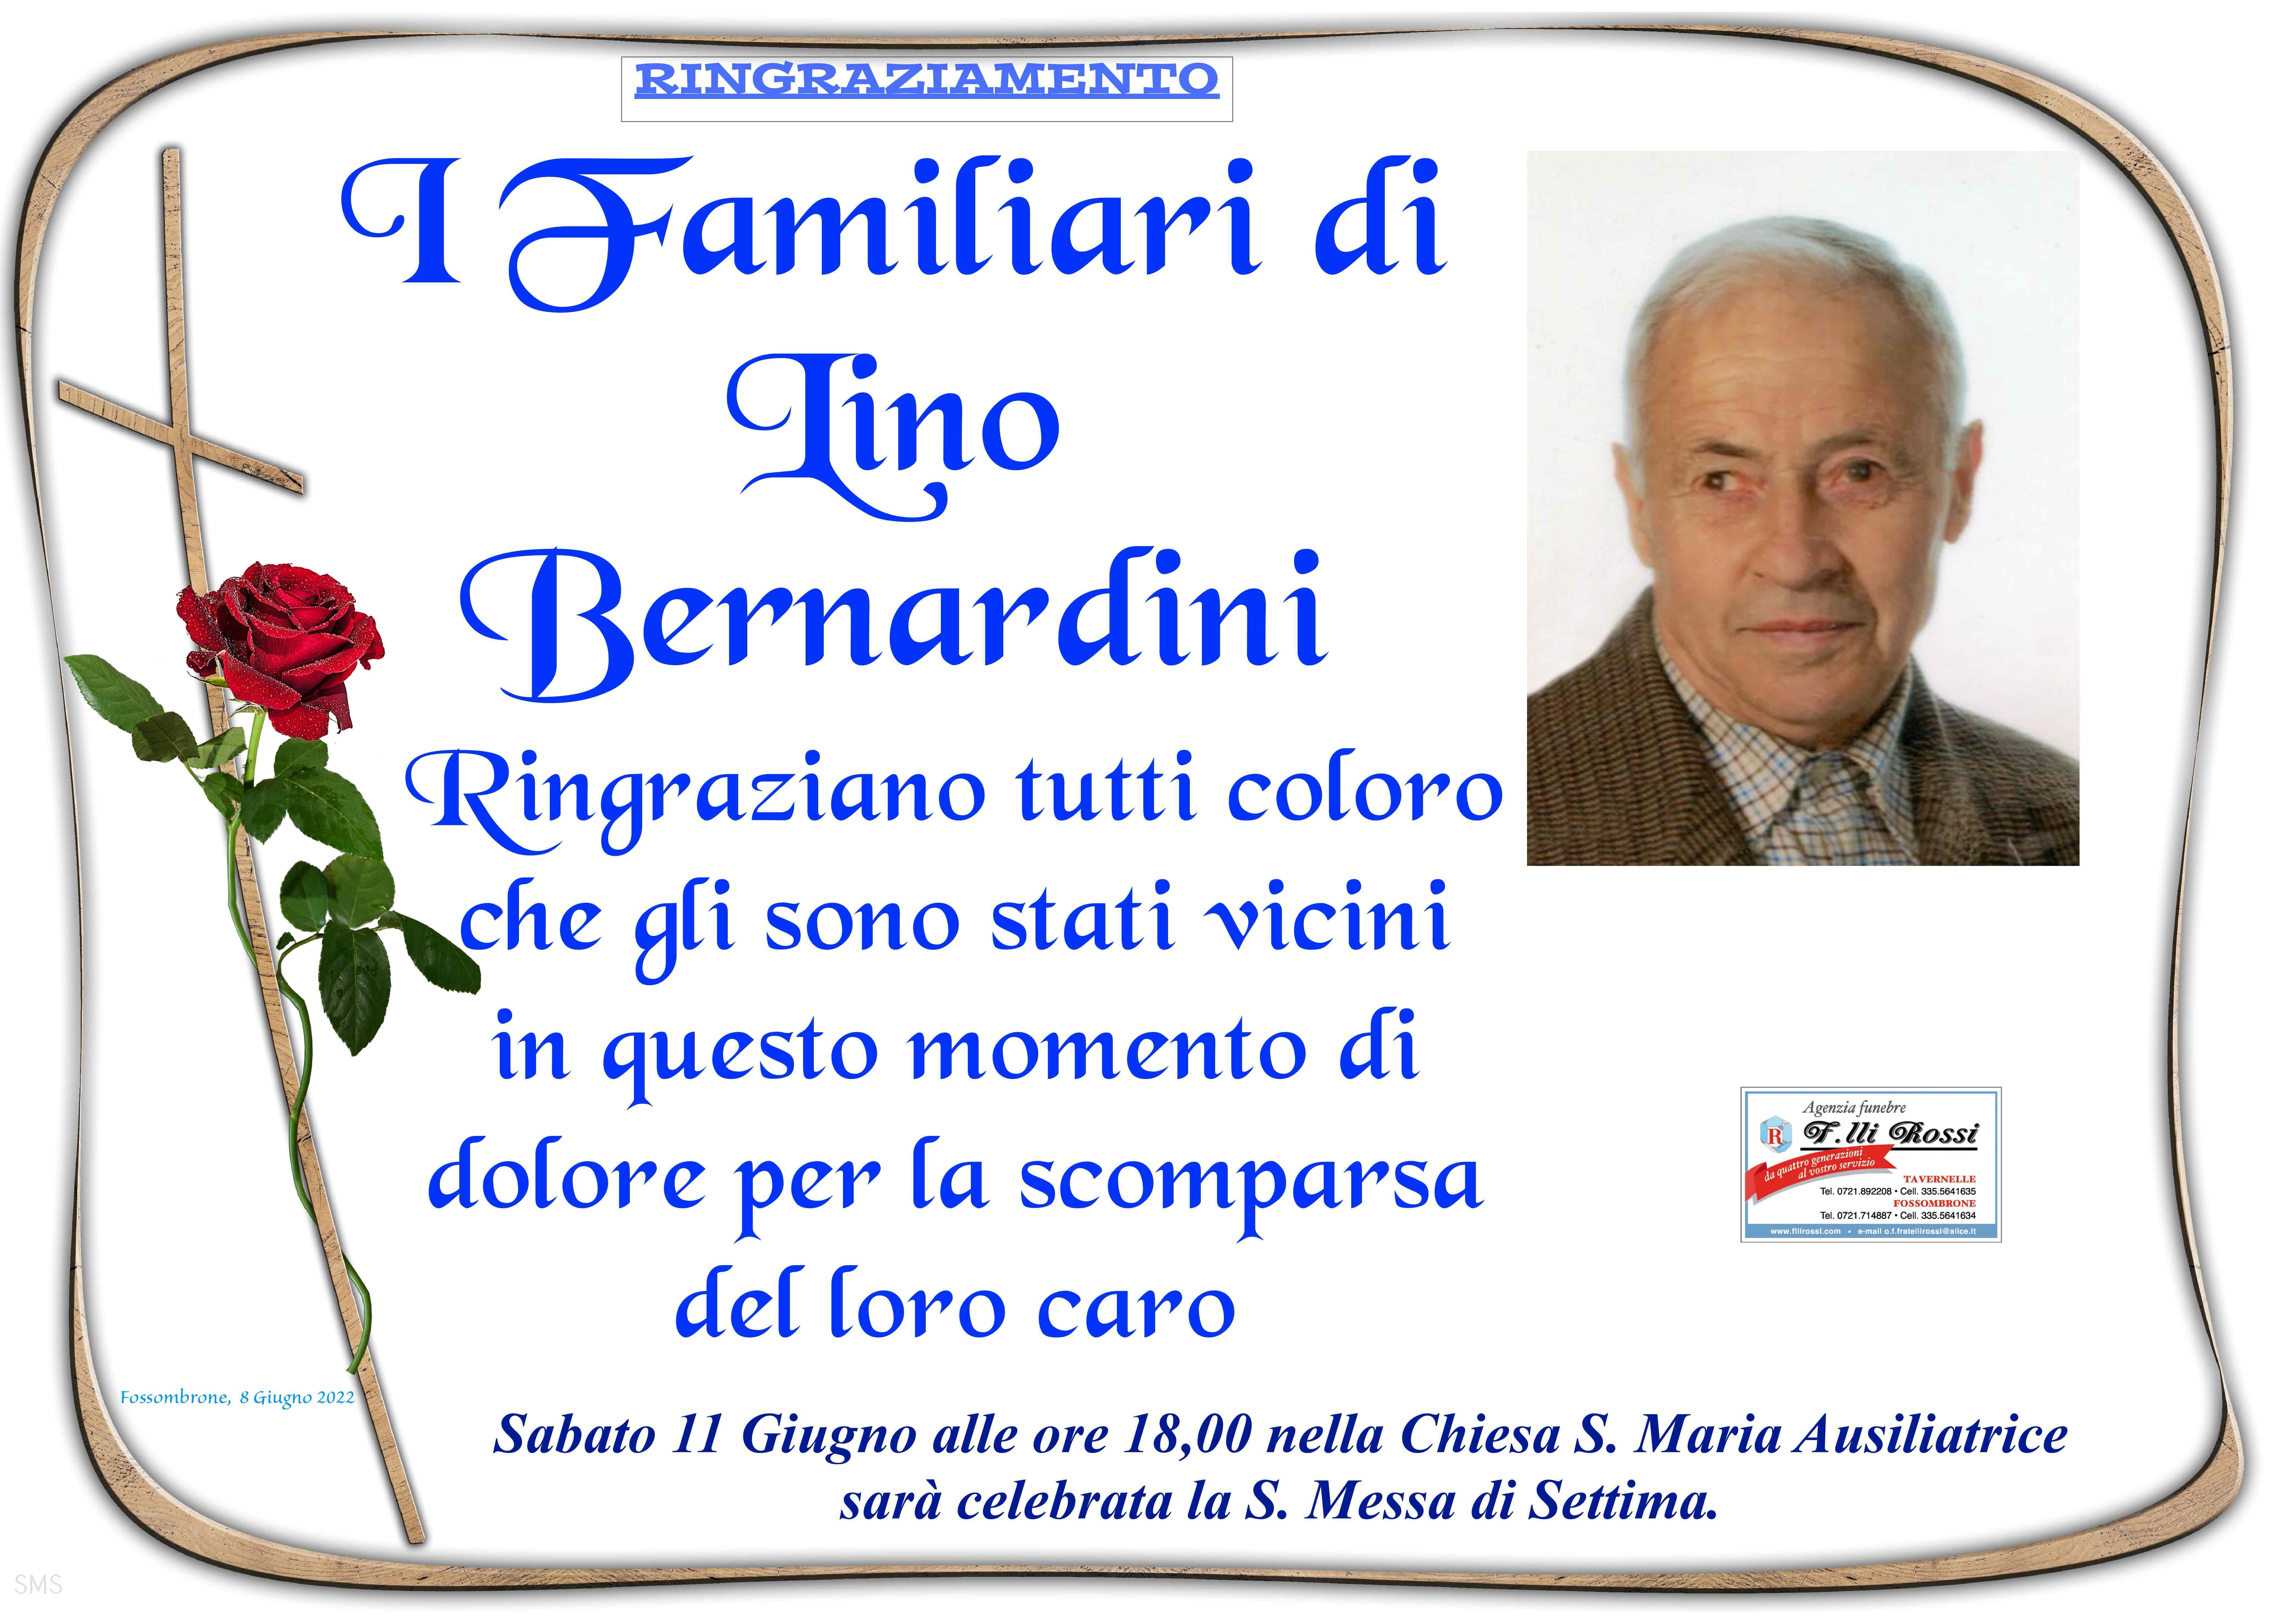 Lino Bernardini